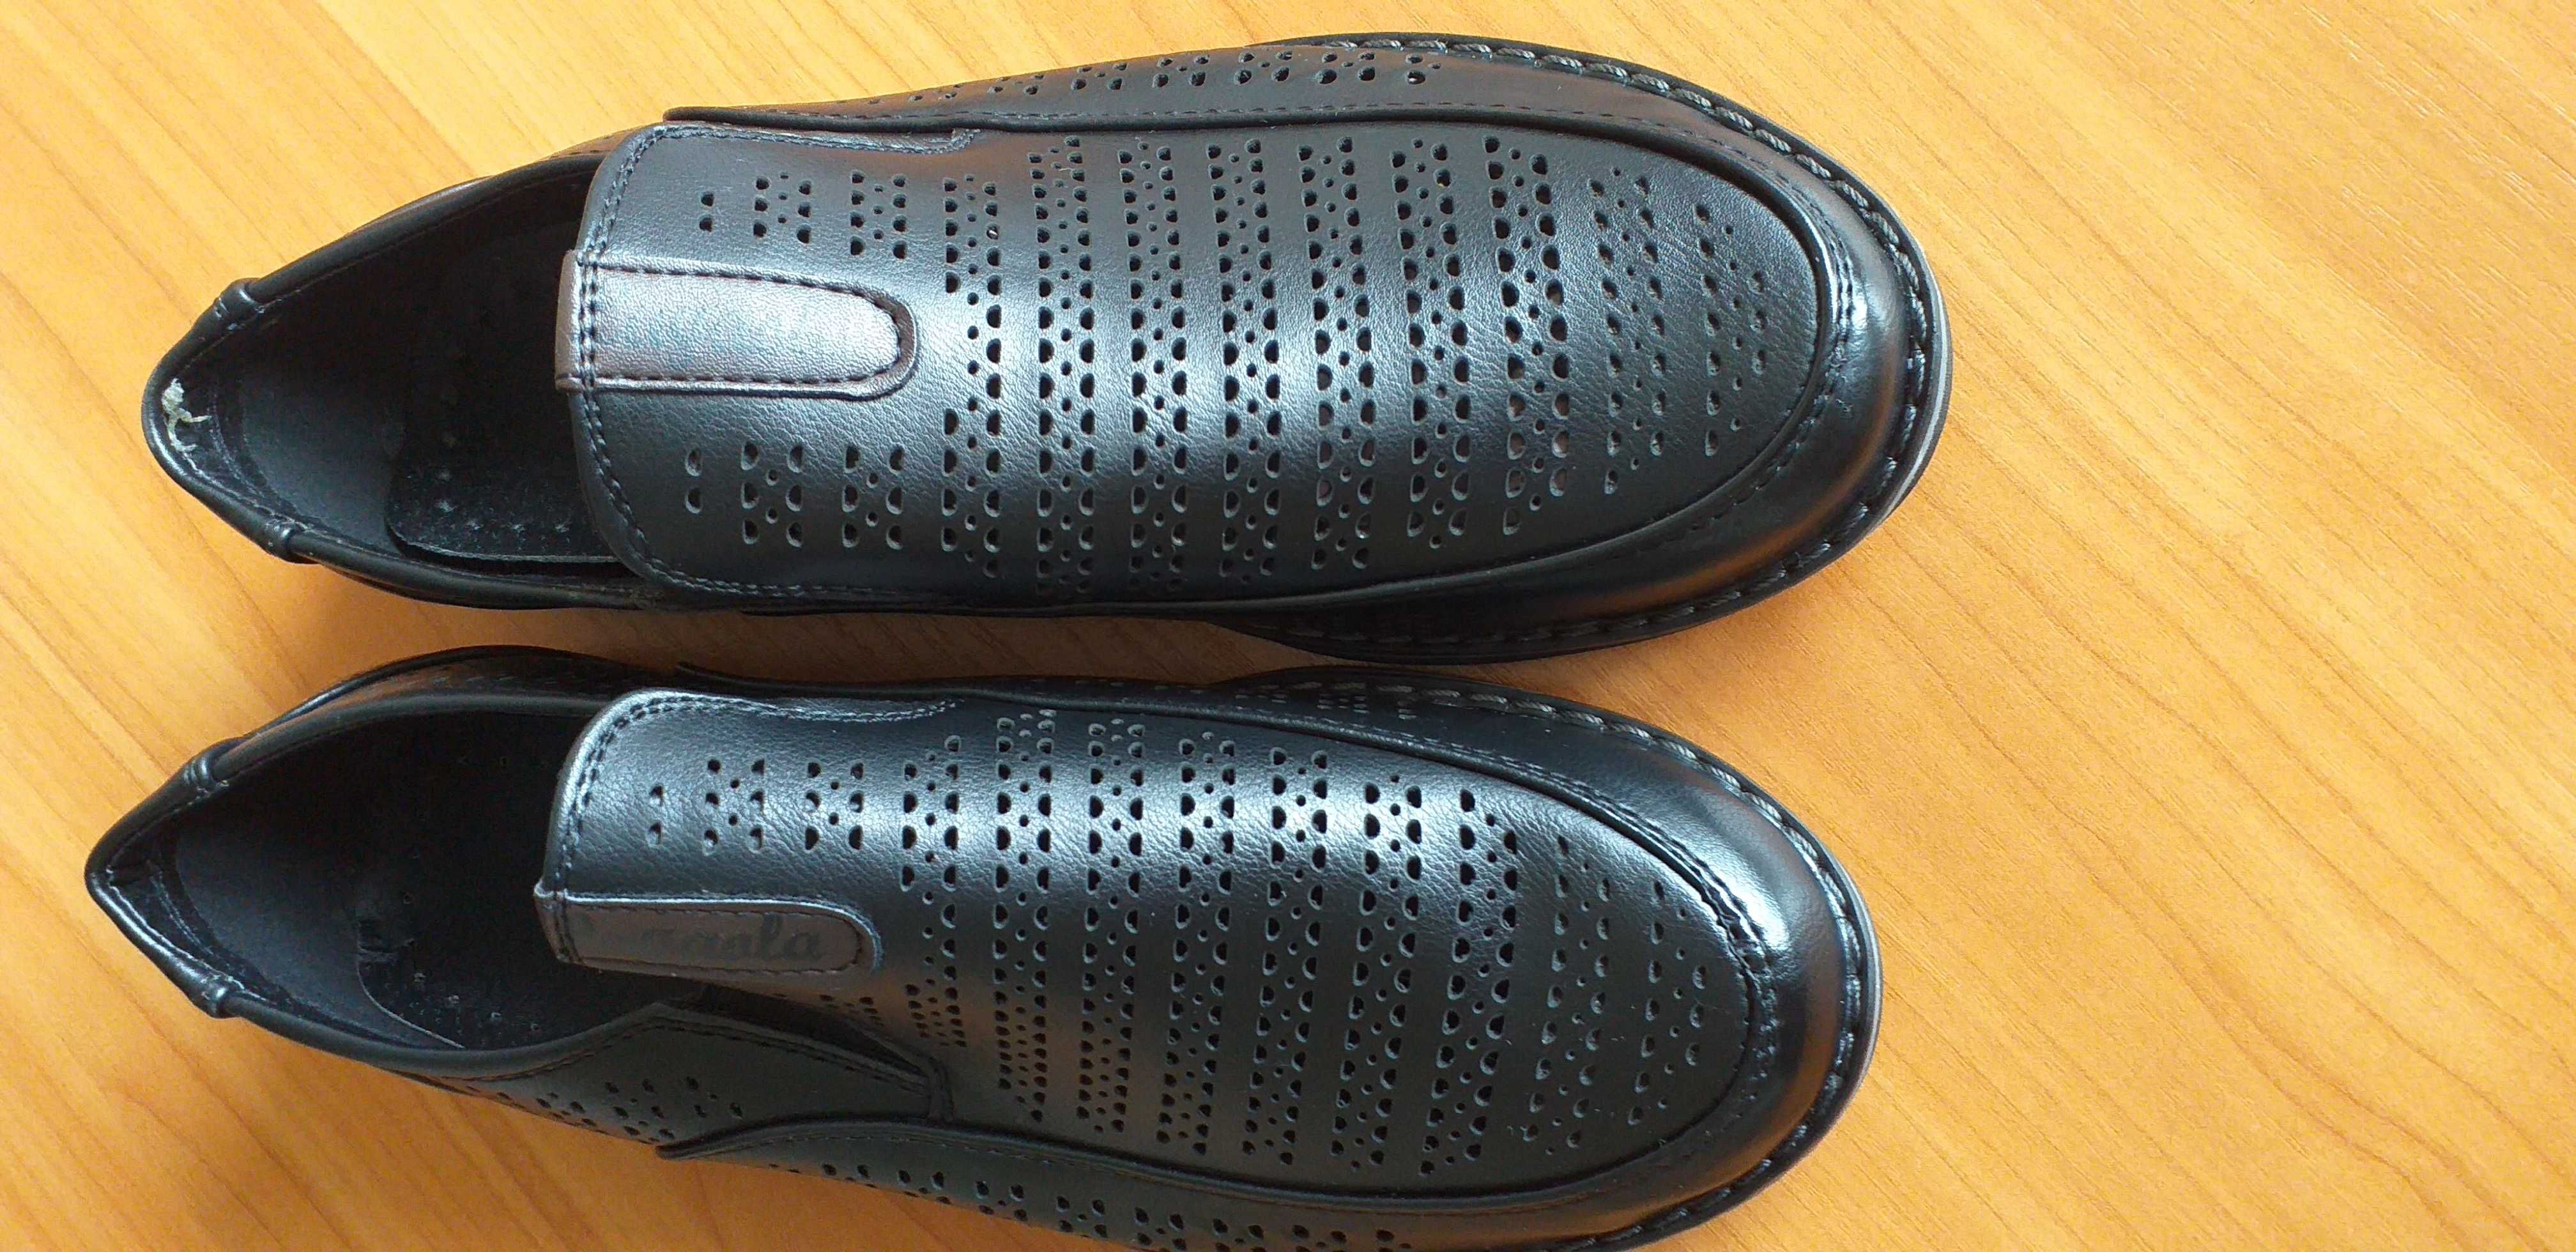 продам недорого новые мужские туфли размер 36,цена 3000тенге